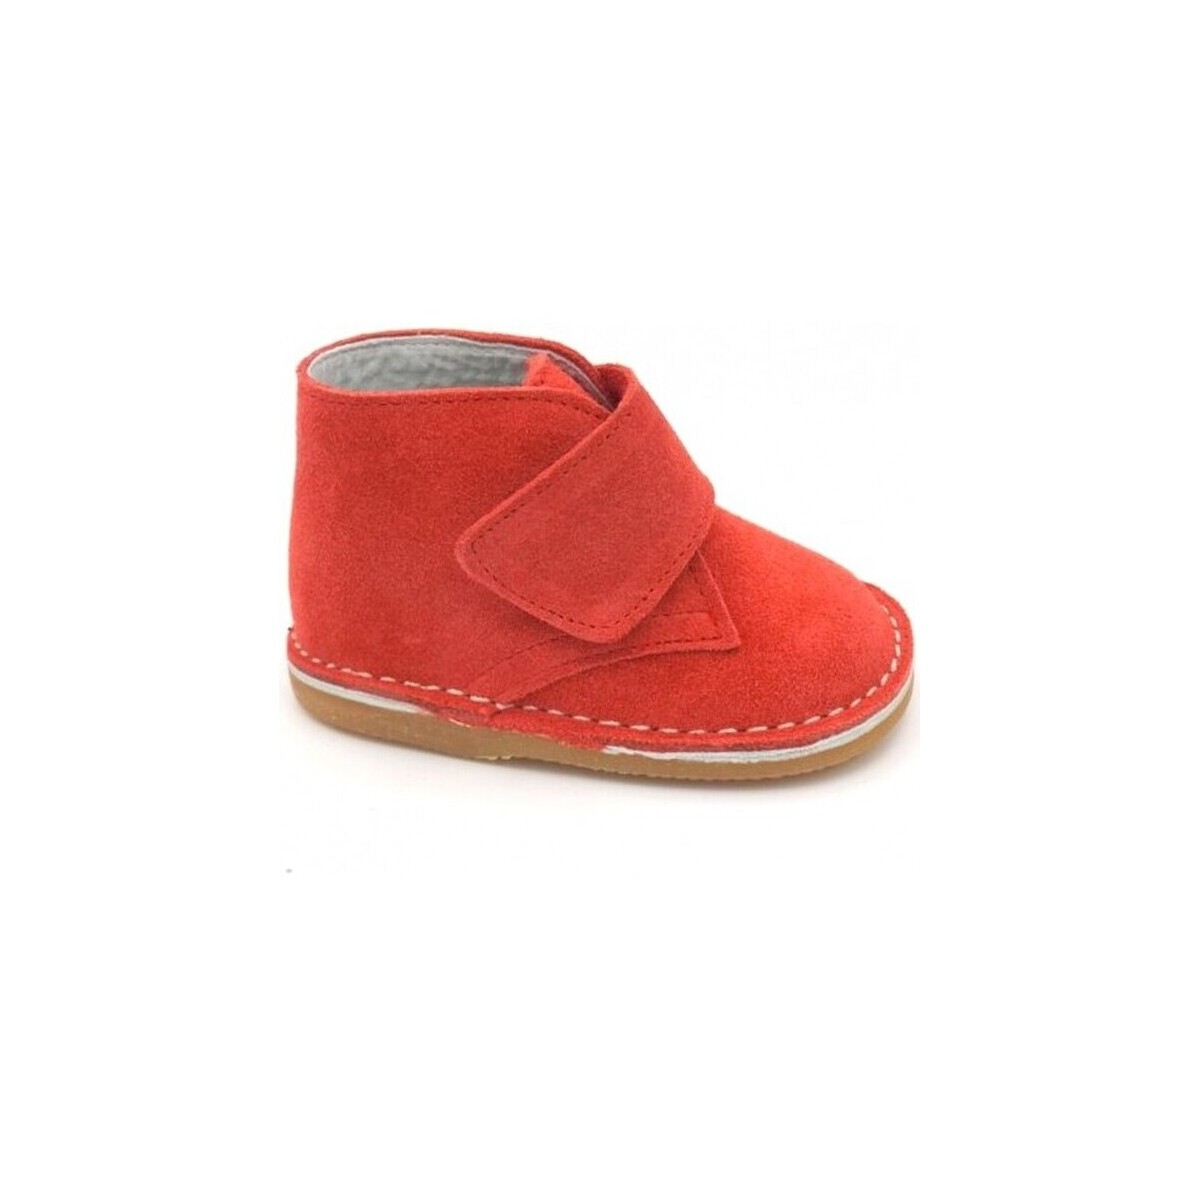 Čevlji  Škornji Colores 12251-15 Rdeča